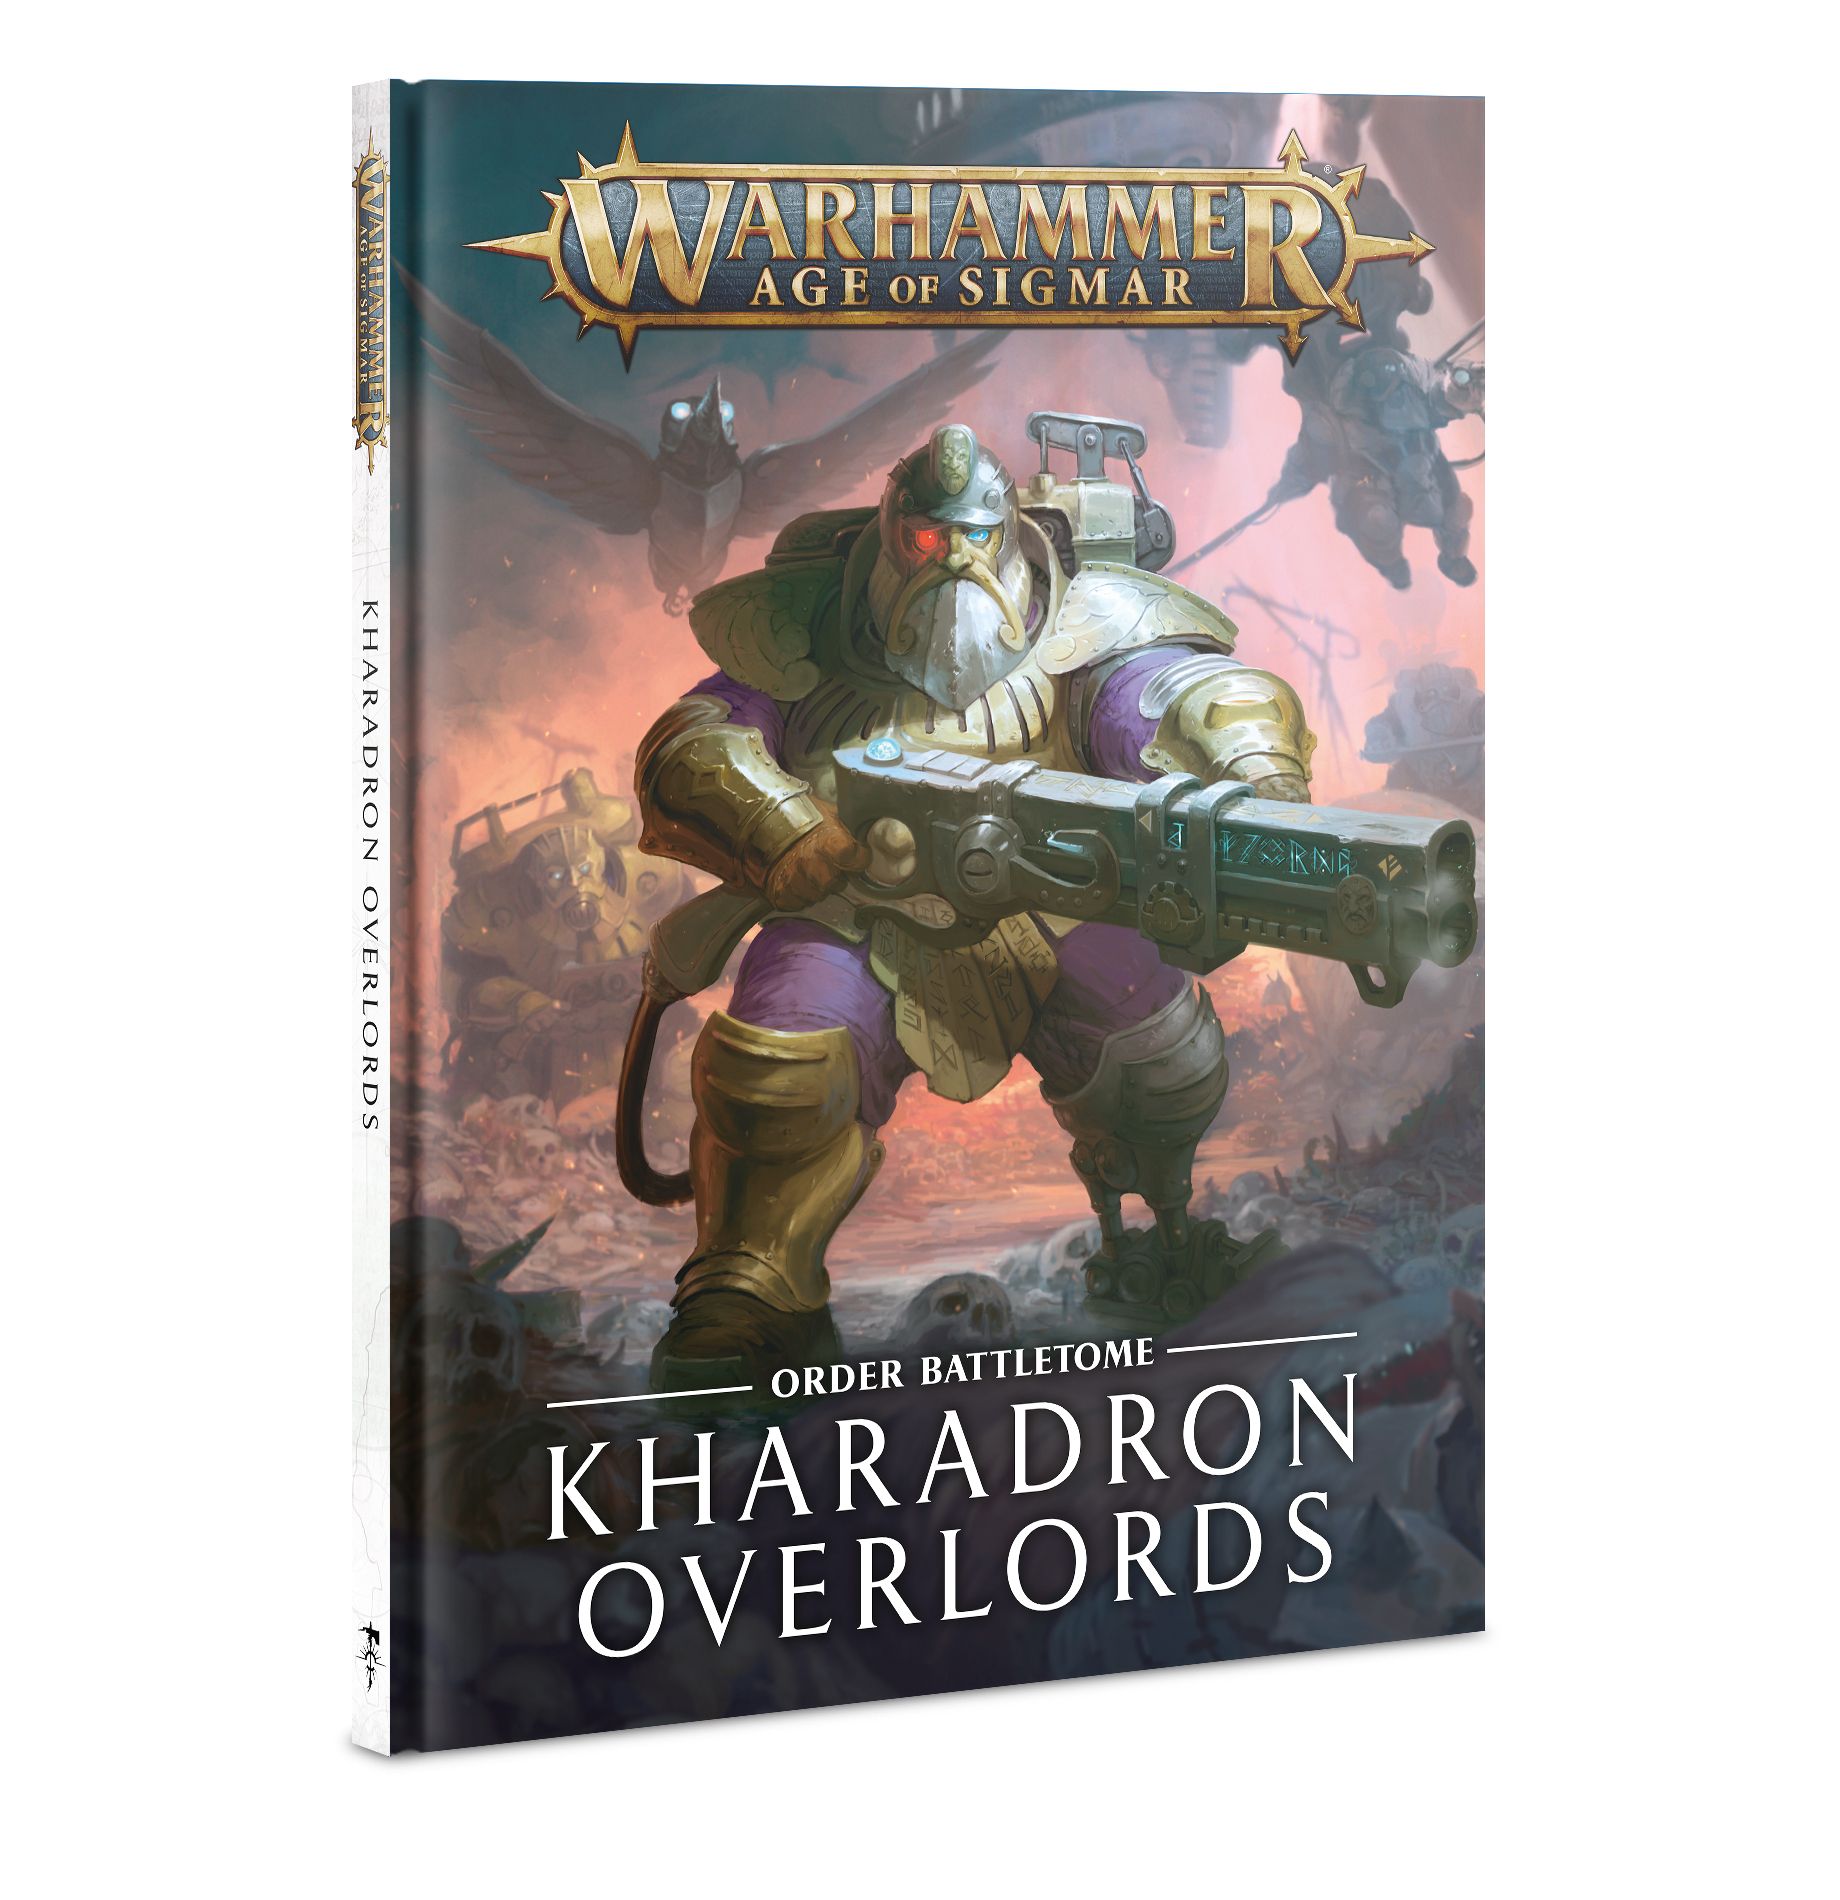  Kharadon Overlords: Order Battletome 